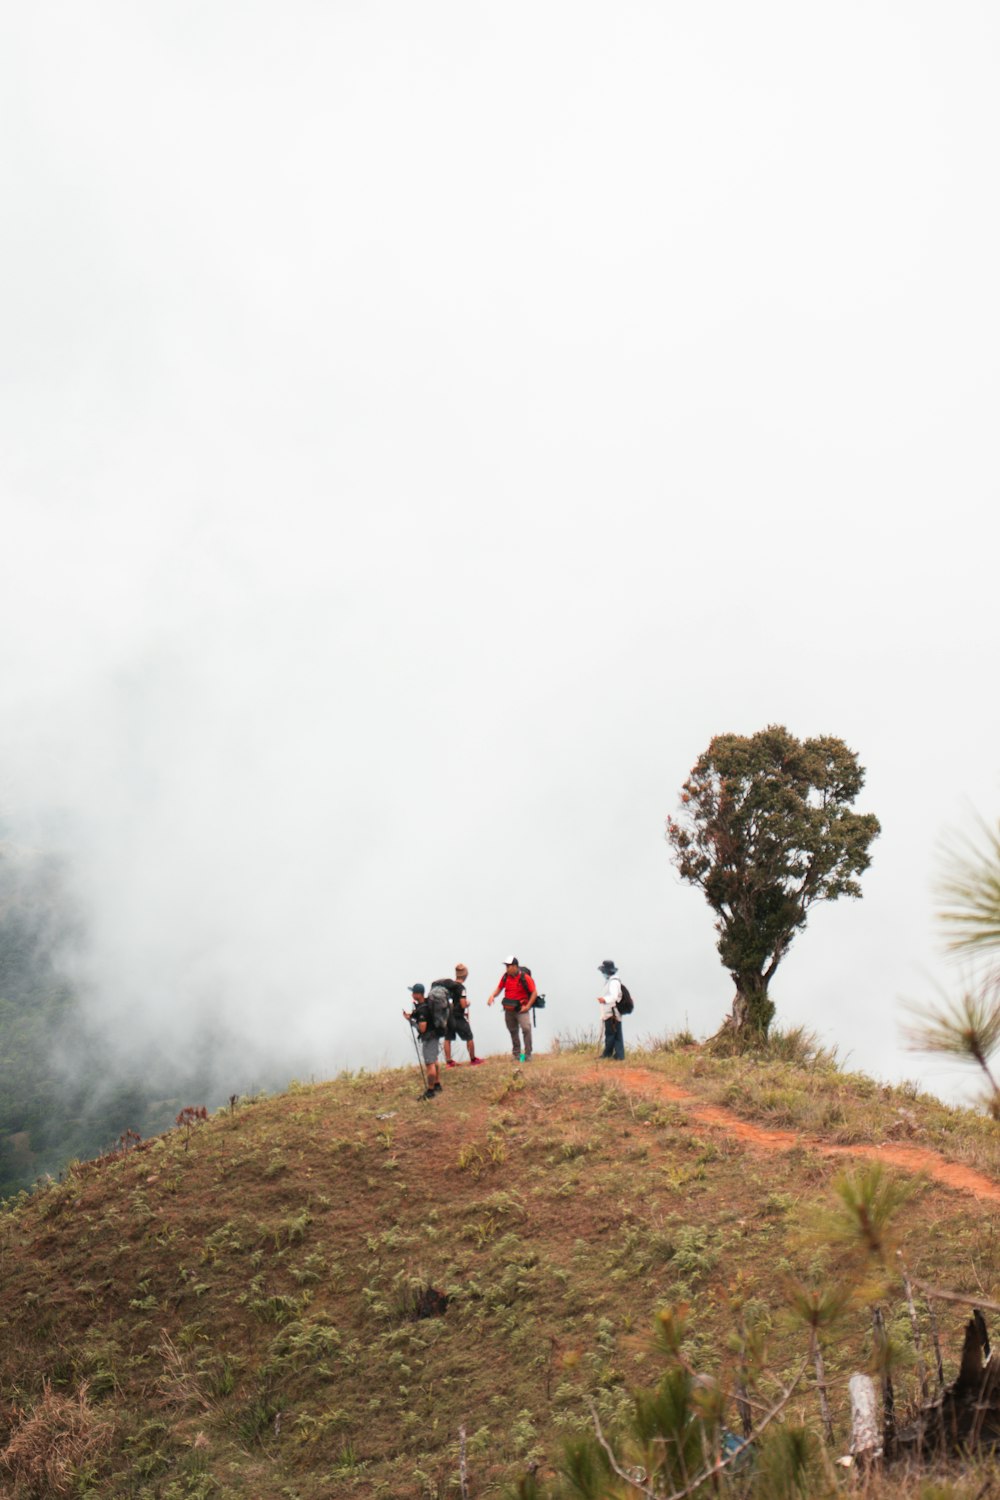 Eine Gruppe von Menschen, die auf einem Hügel mit Nebel spazieren gehen